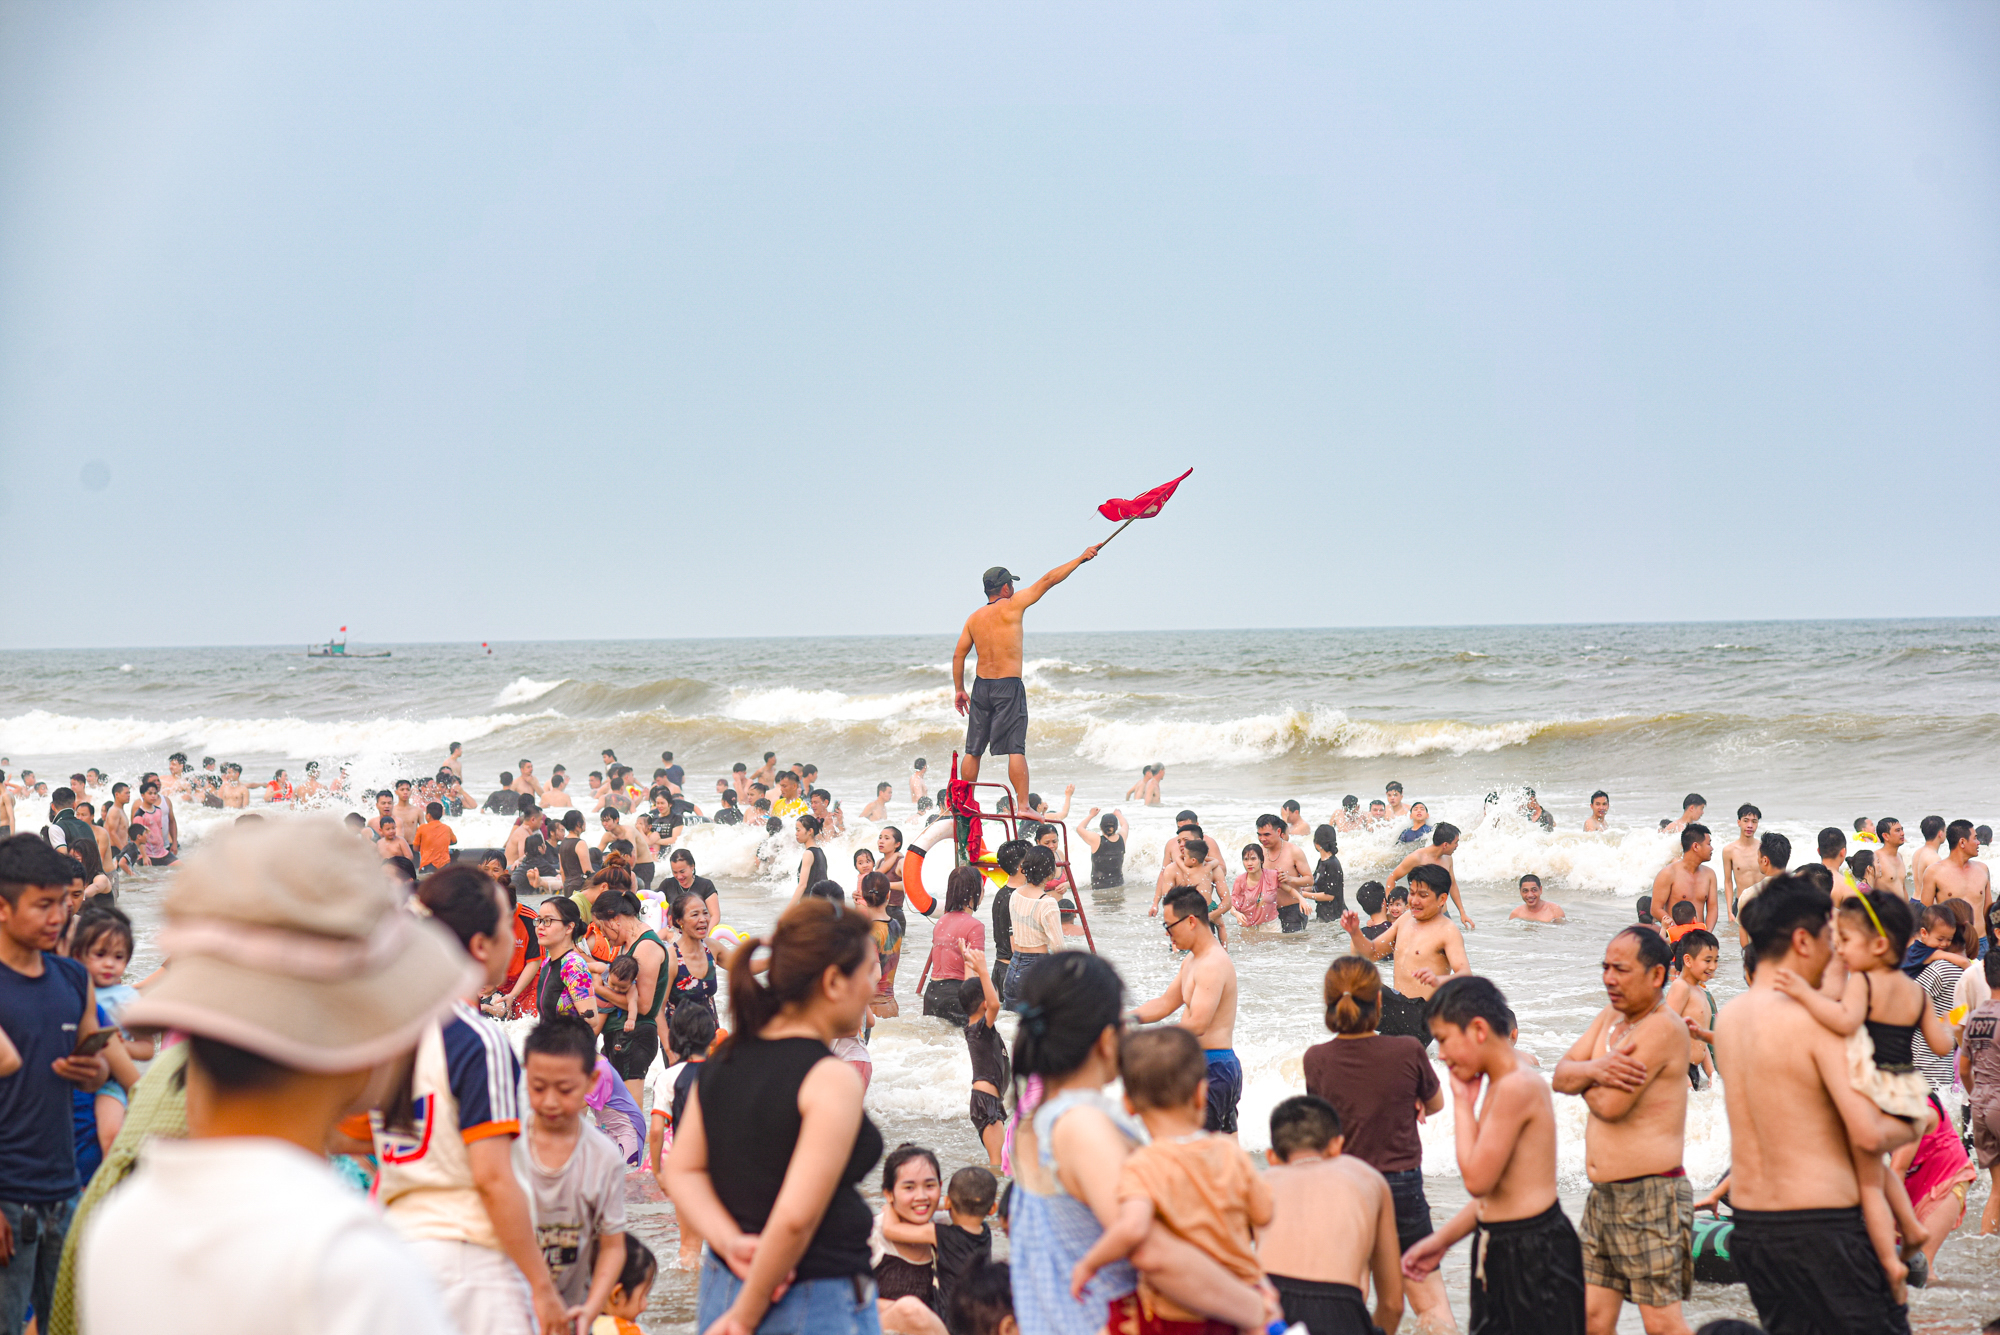 Bãi biển Sầm Sơn ken đặc người đổ về giải nhiệt, du khách nói 3 lý do quyết lựa chọn nơi này- Ảnh 8.